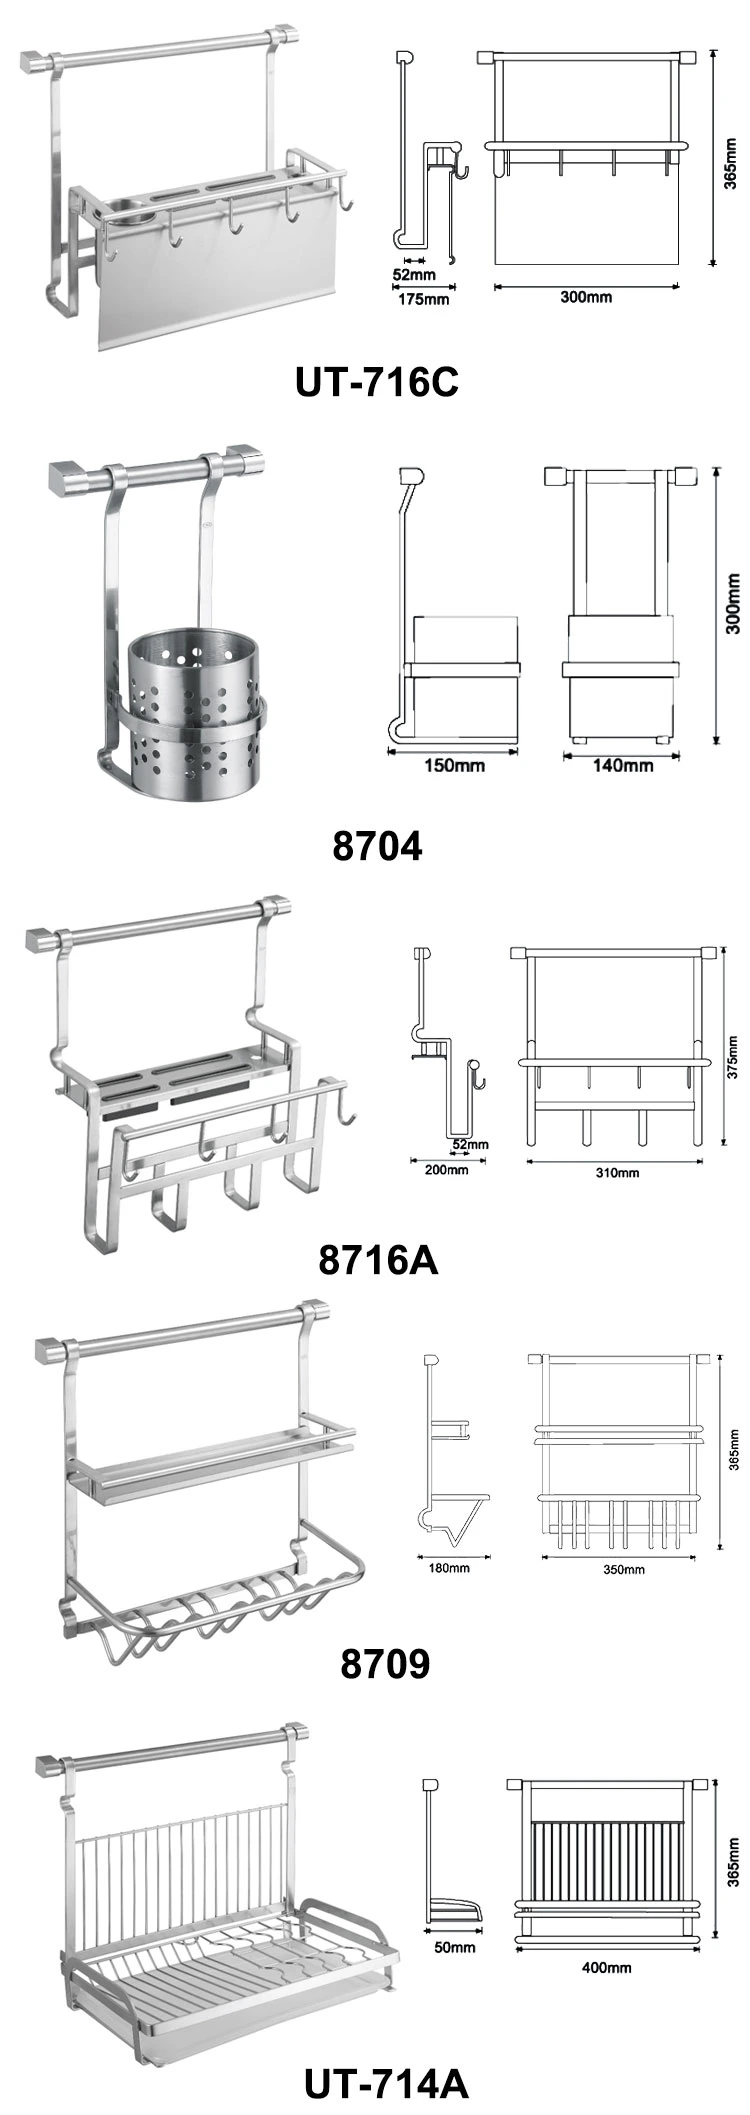 Kitchen 3 Tier Stainless Steel Kitchen Organizer Shelf Dish Stand Drainer Holder Rack with Utensil Drying Storage Caddy